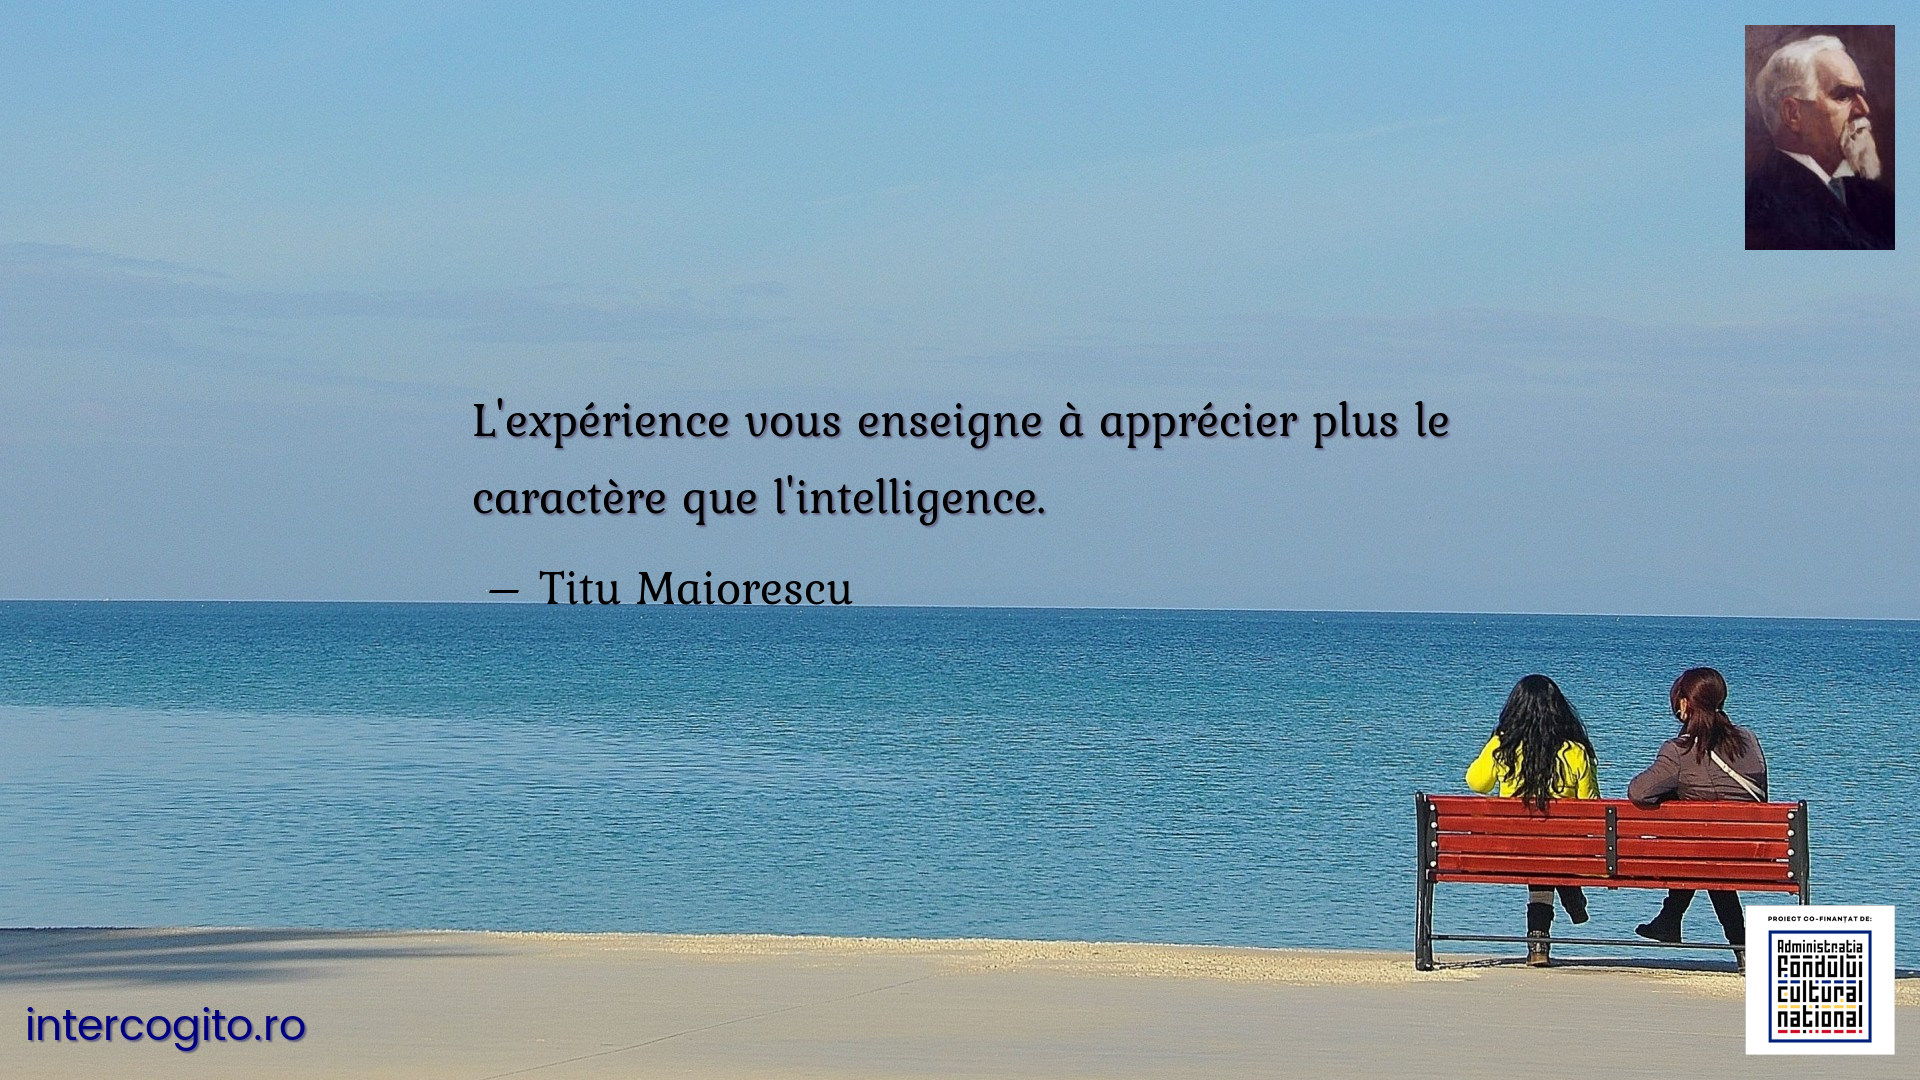 L'expérience vous enseigne à apprécier plus le caractère que l'intelligence.